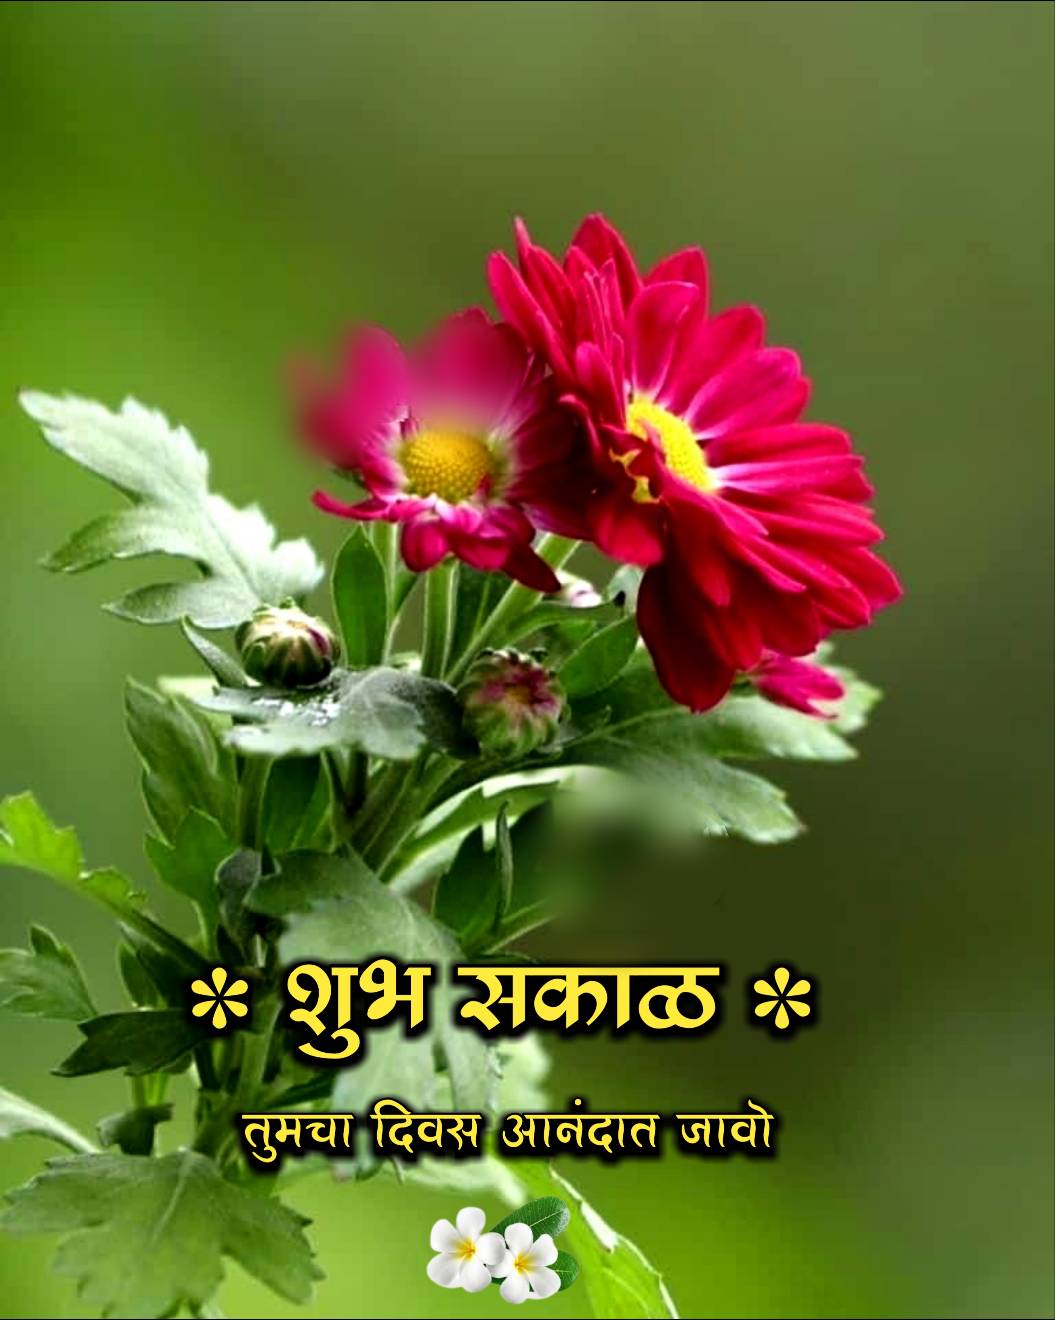 शुभ सकाळ फुलांचे फोटो Shubh Sakal Phulanche Photo (9)